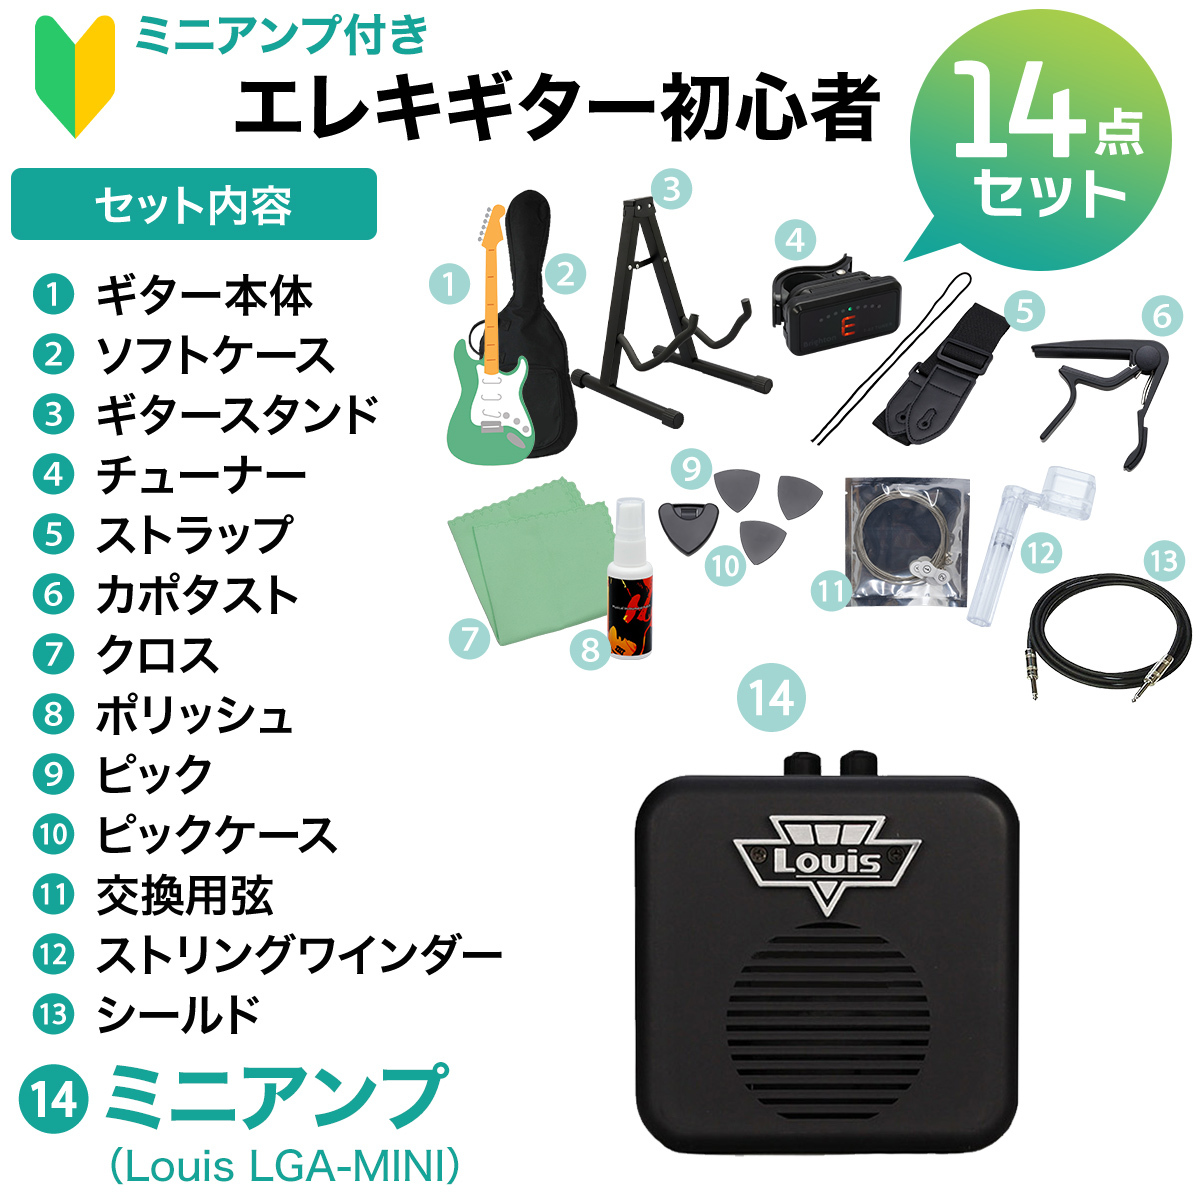 Aria Pro II MAC-STD エレキギター初心者14点セット【ミニアンプ付き